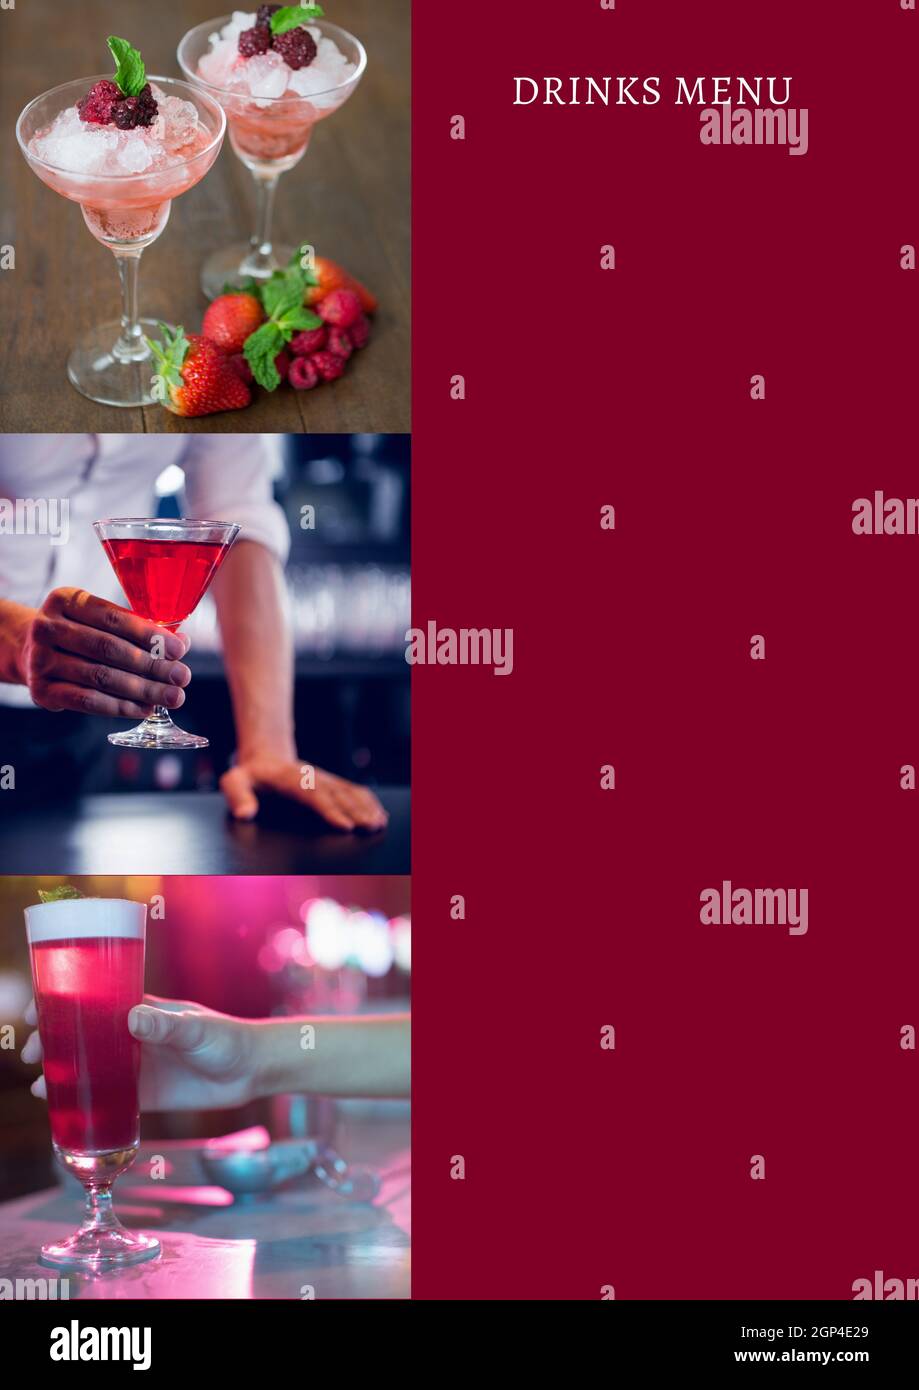 Composizione del testo del menu bevande e cocktail al bar su sfondo rosso Foto Stock